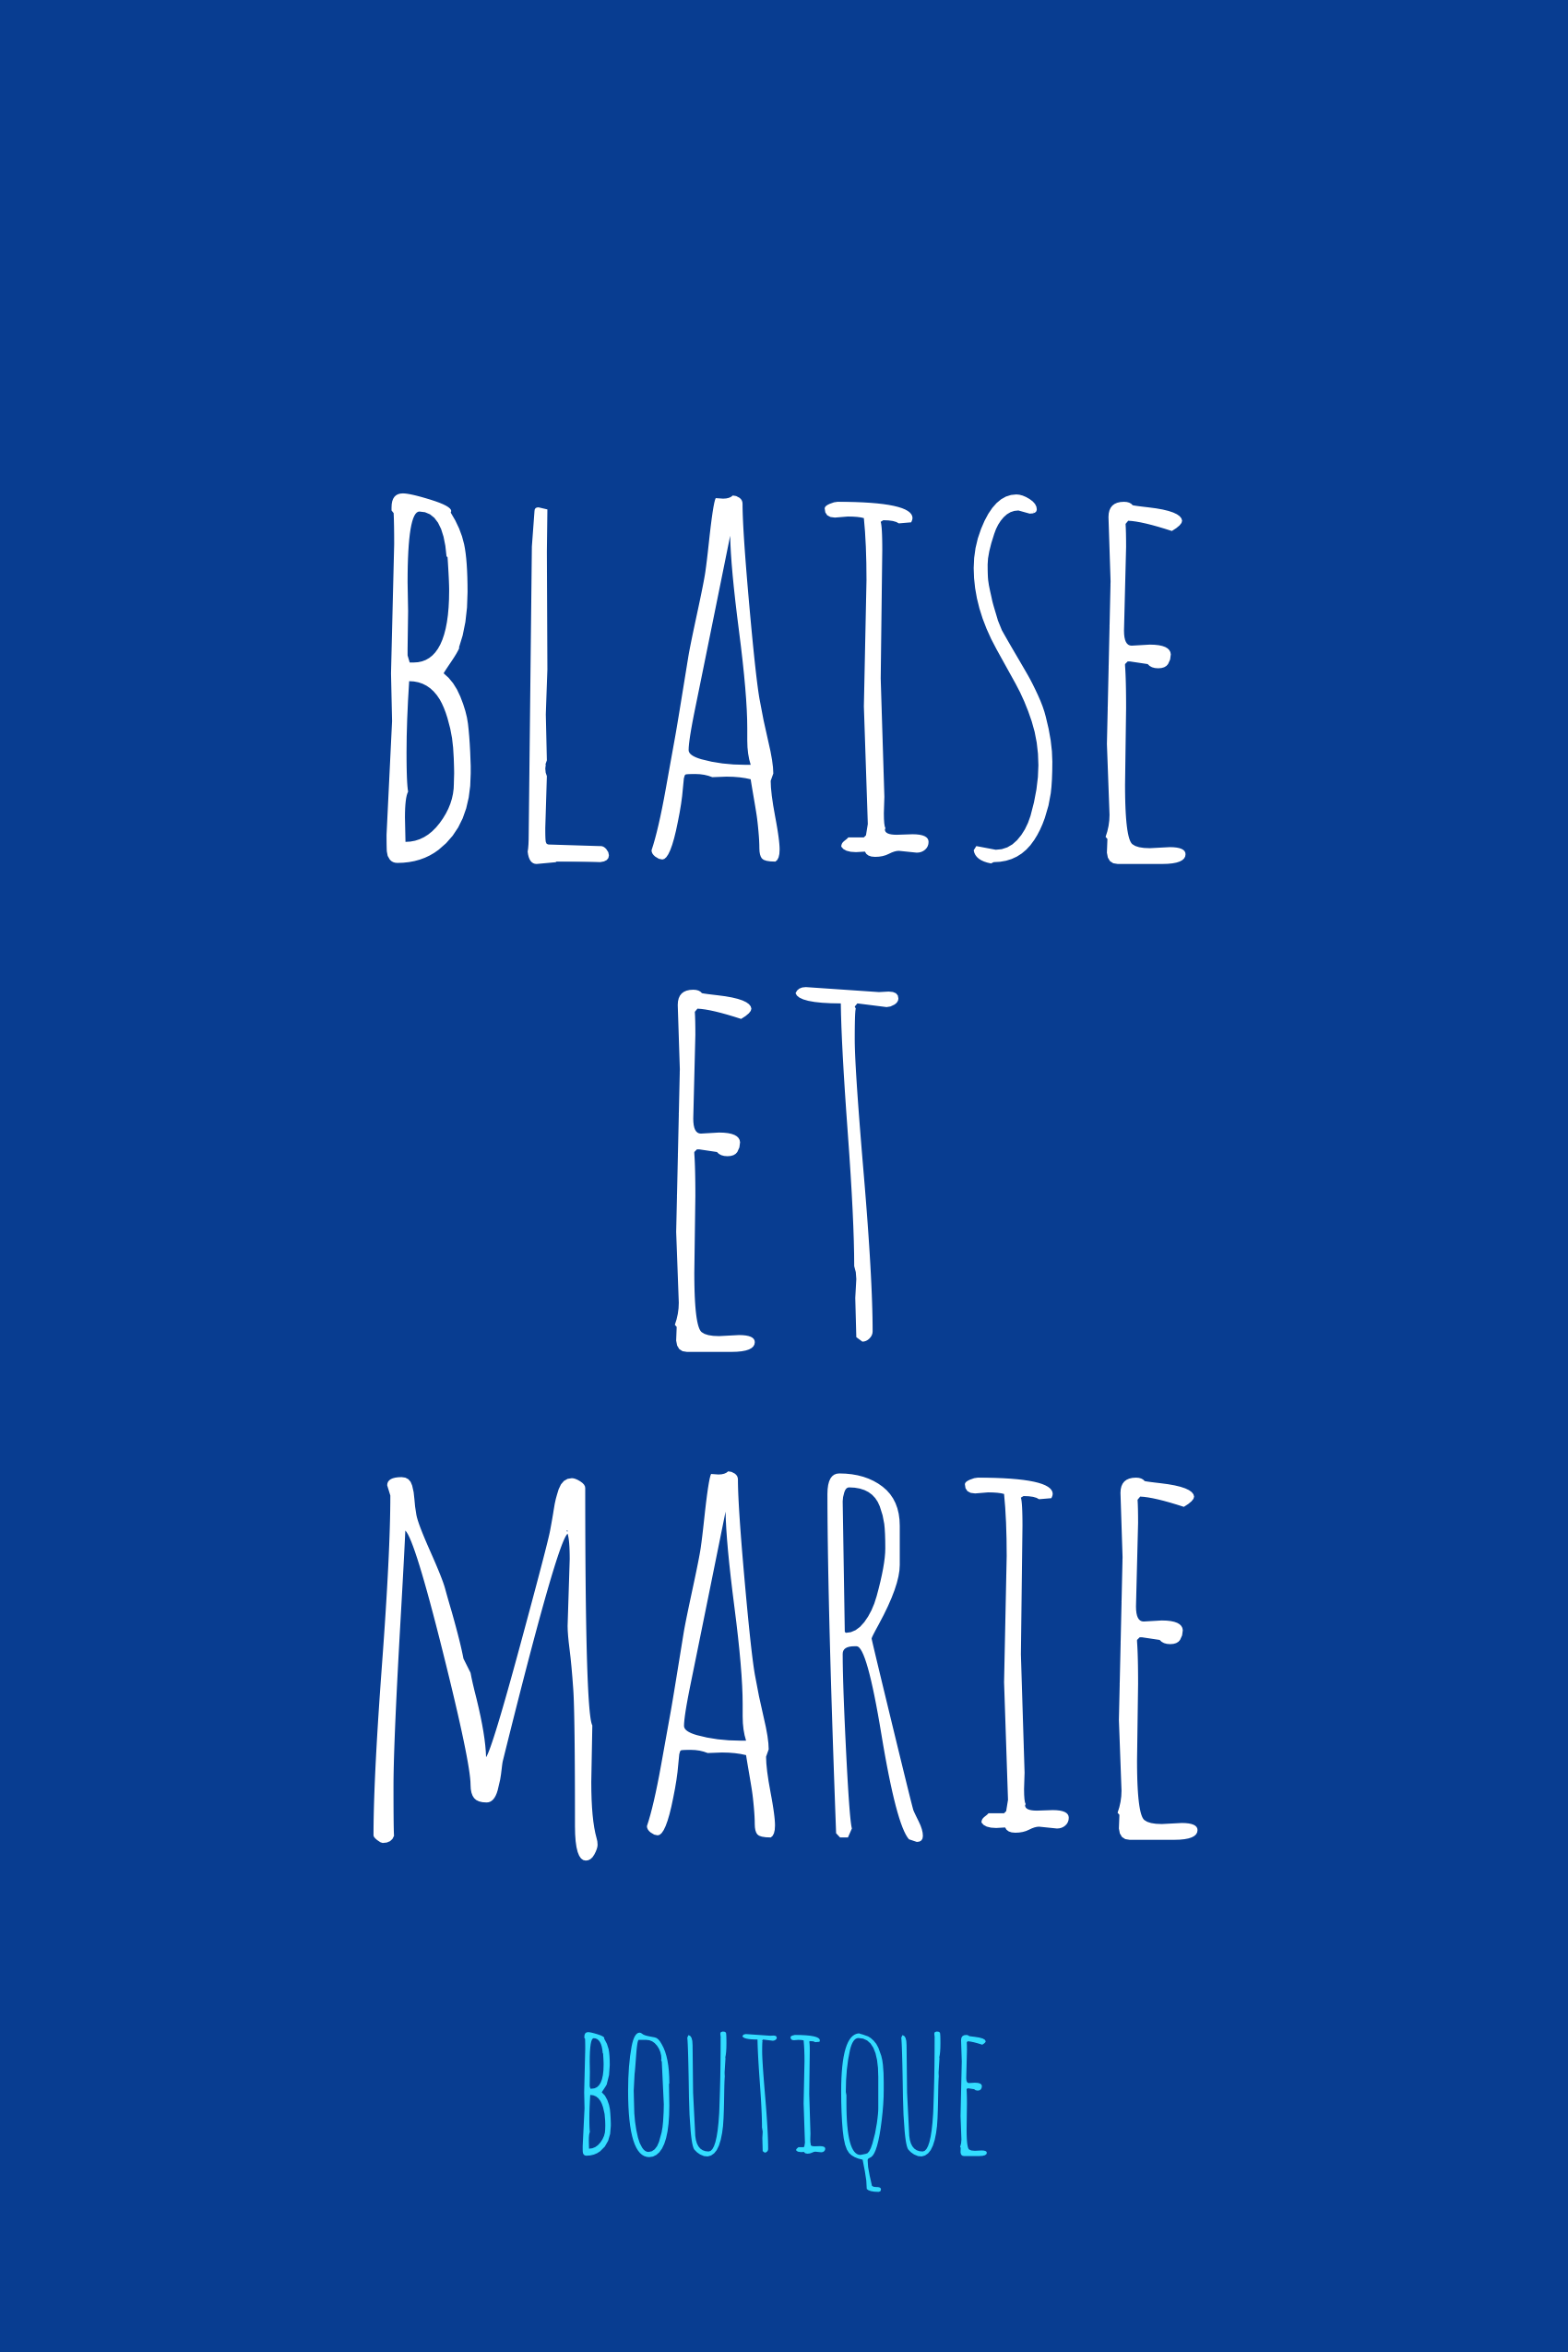 Boutique BLAISE ET MARIE - Clique et rapplique Chalon-sur-Sane